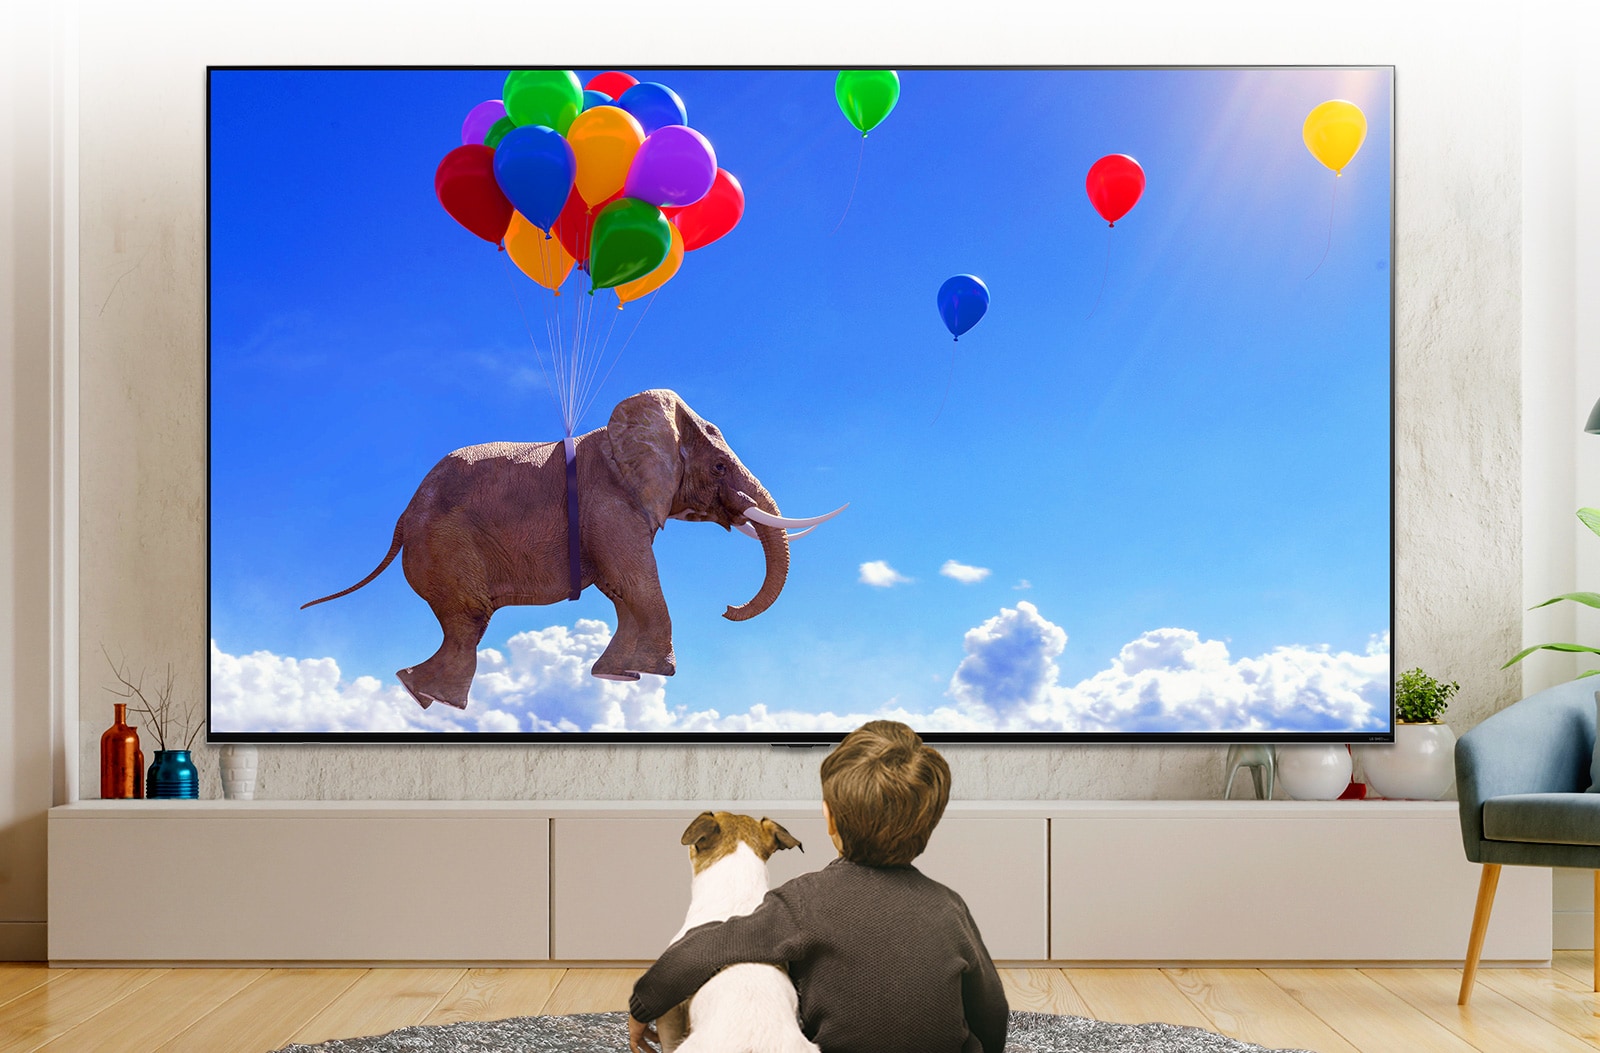 Ребенок с собакой, сидящие перед большим телевизором LG QNED MiniLED, установленным на стене. На экране показан слон, парящий на шариках в синем небе.